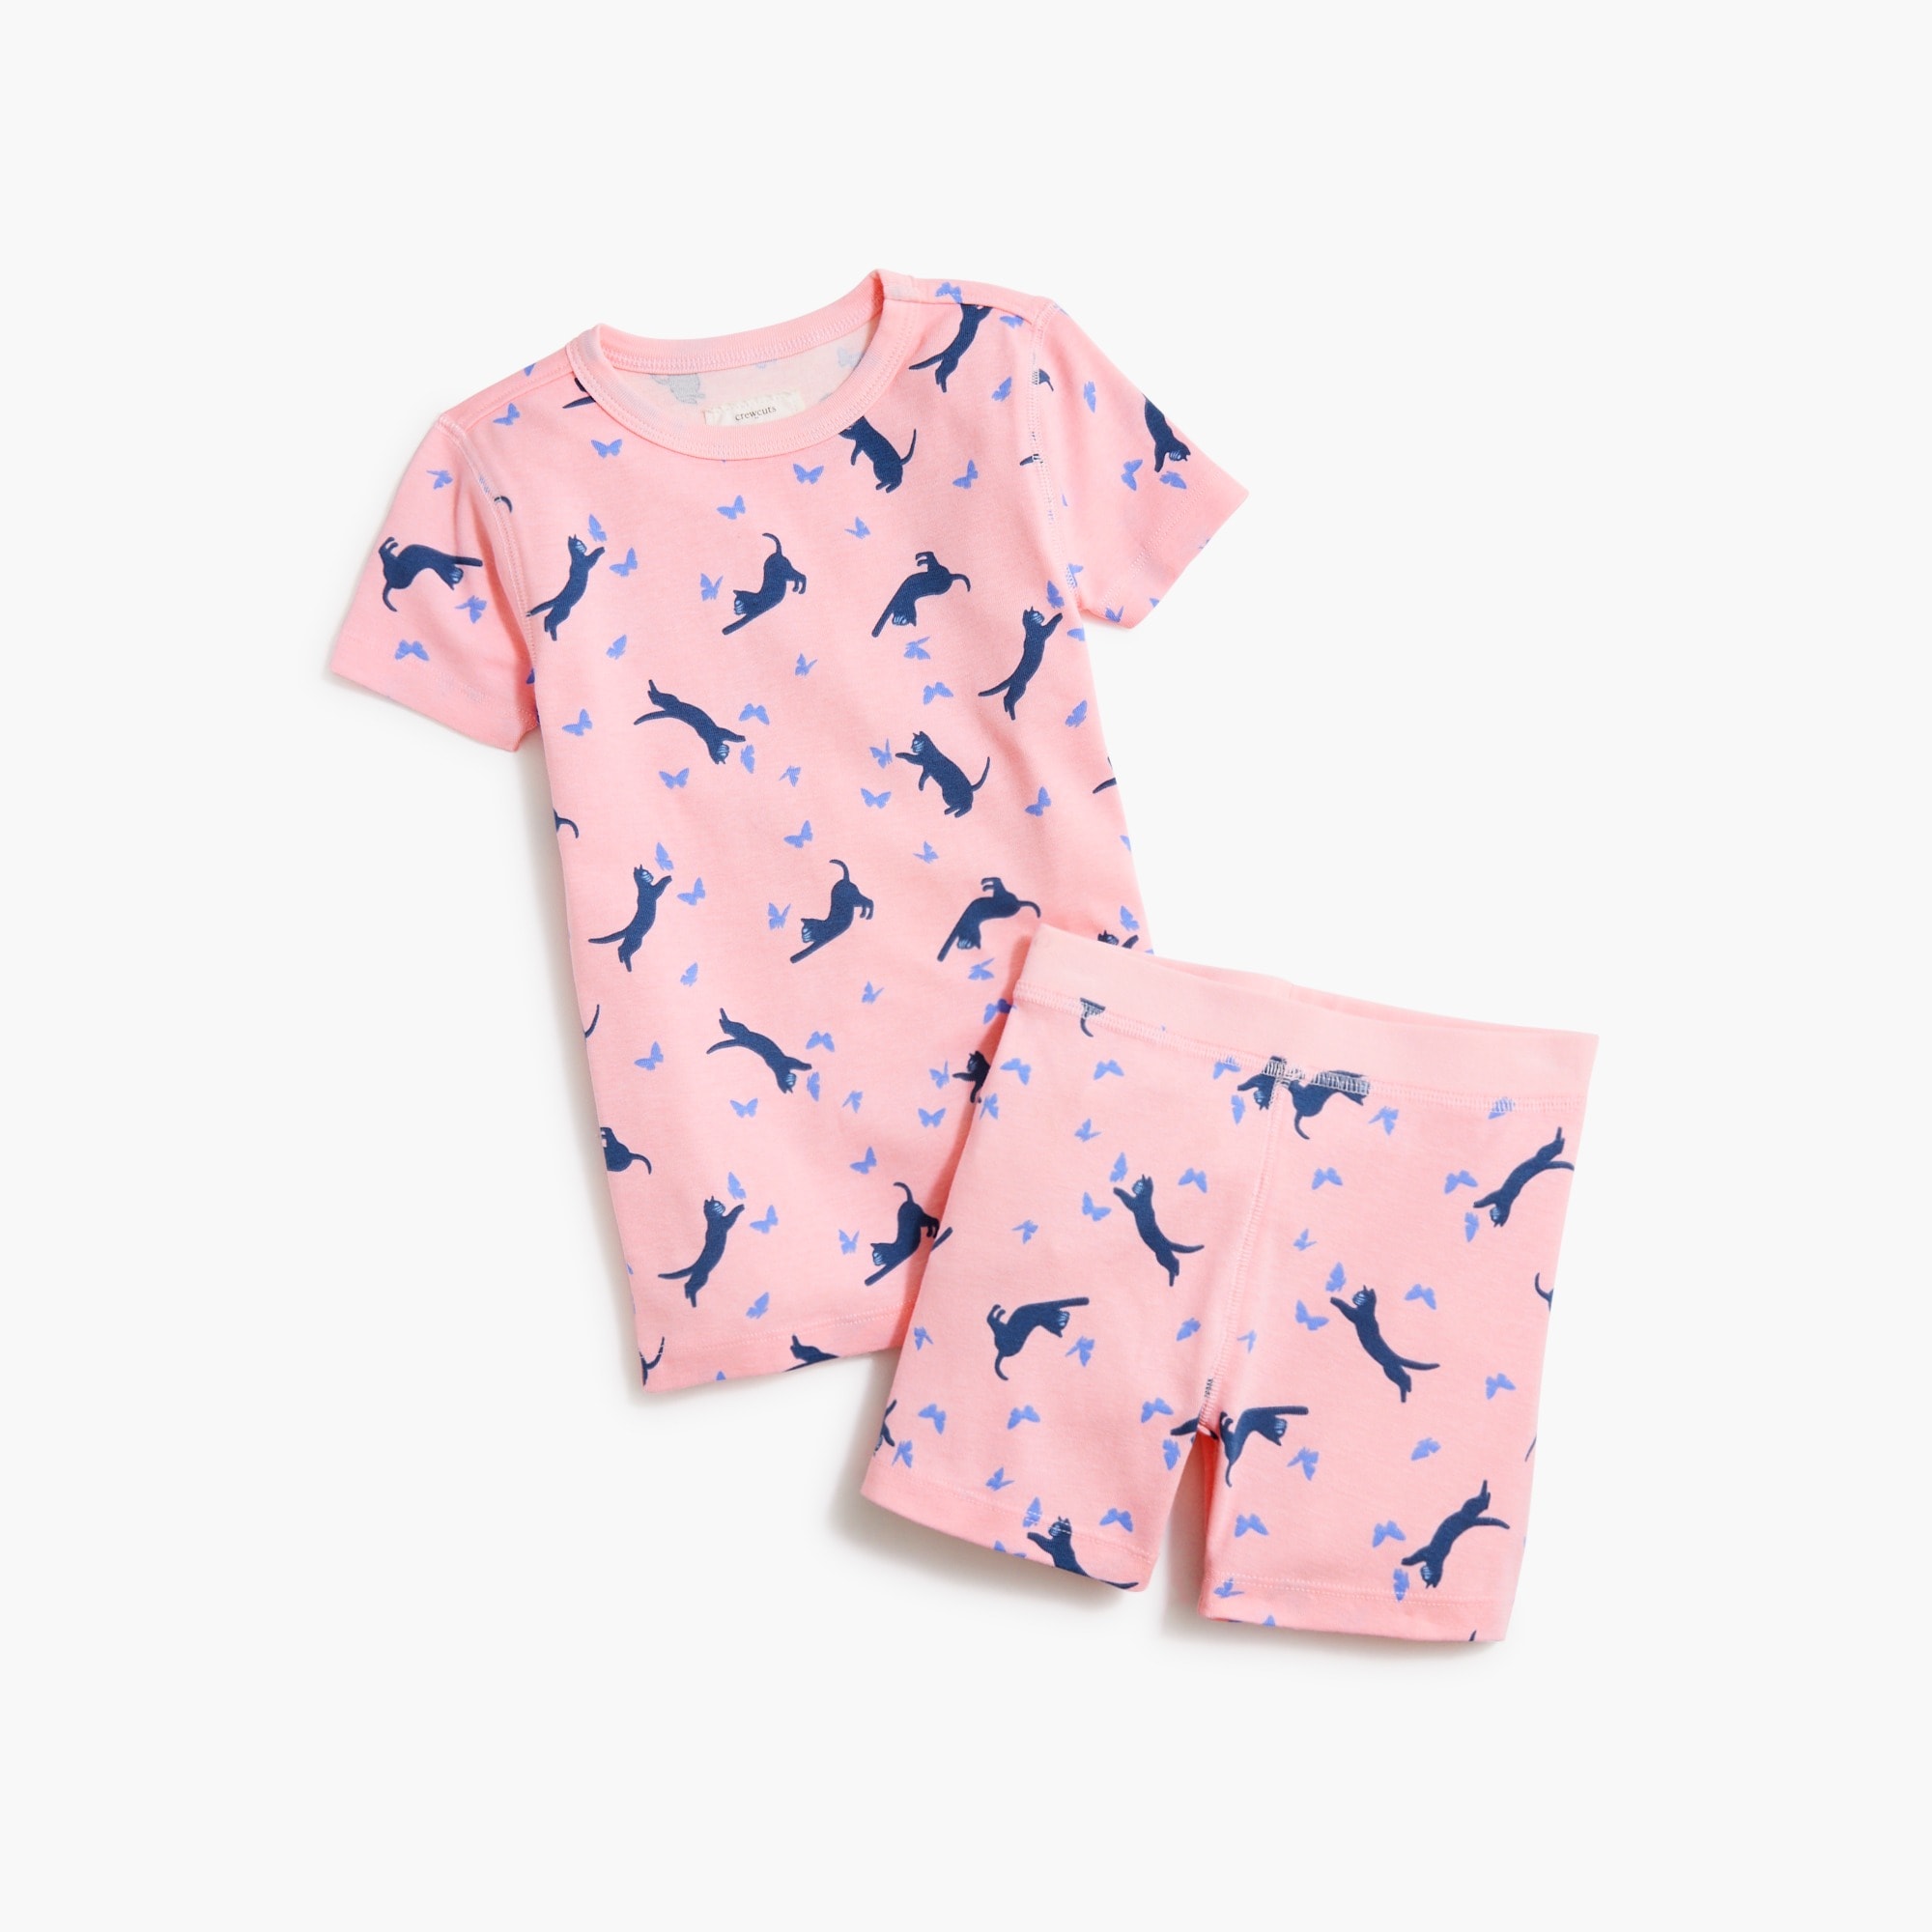 Girls' cats pajama set